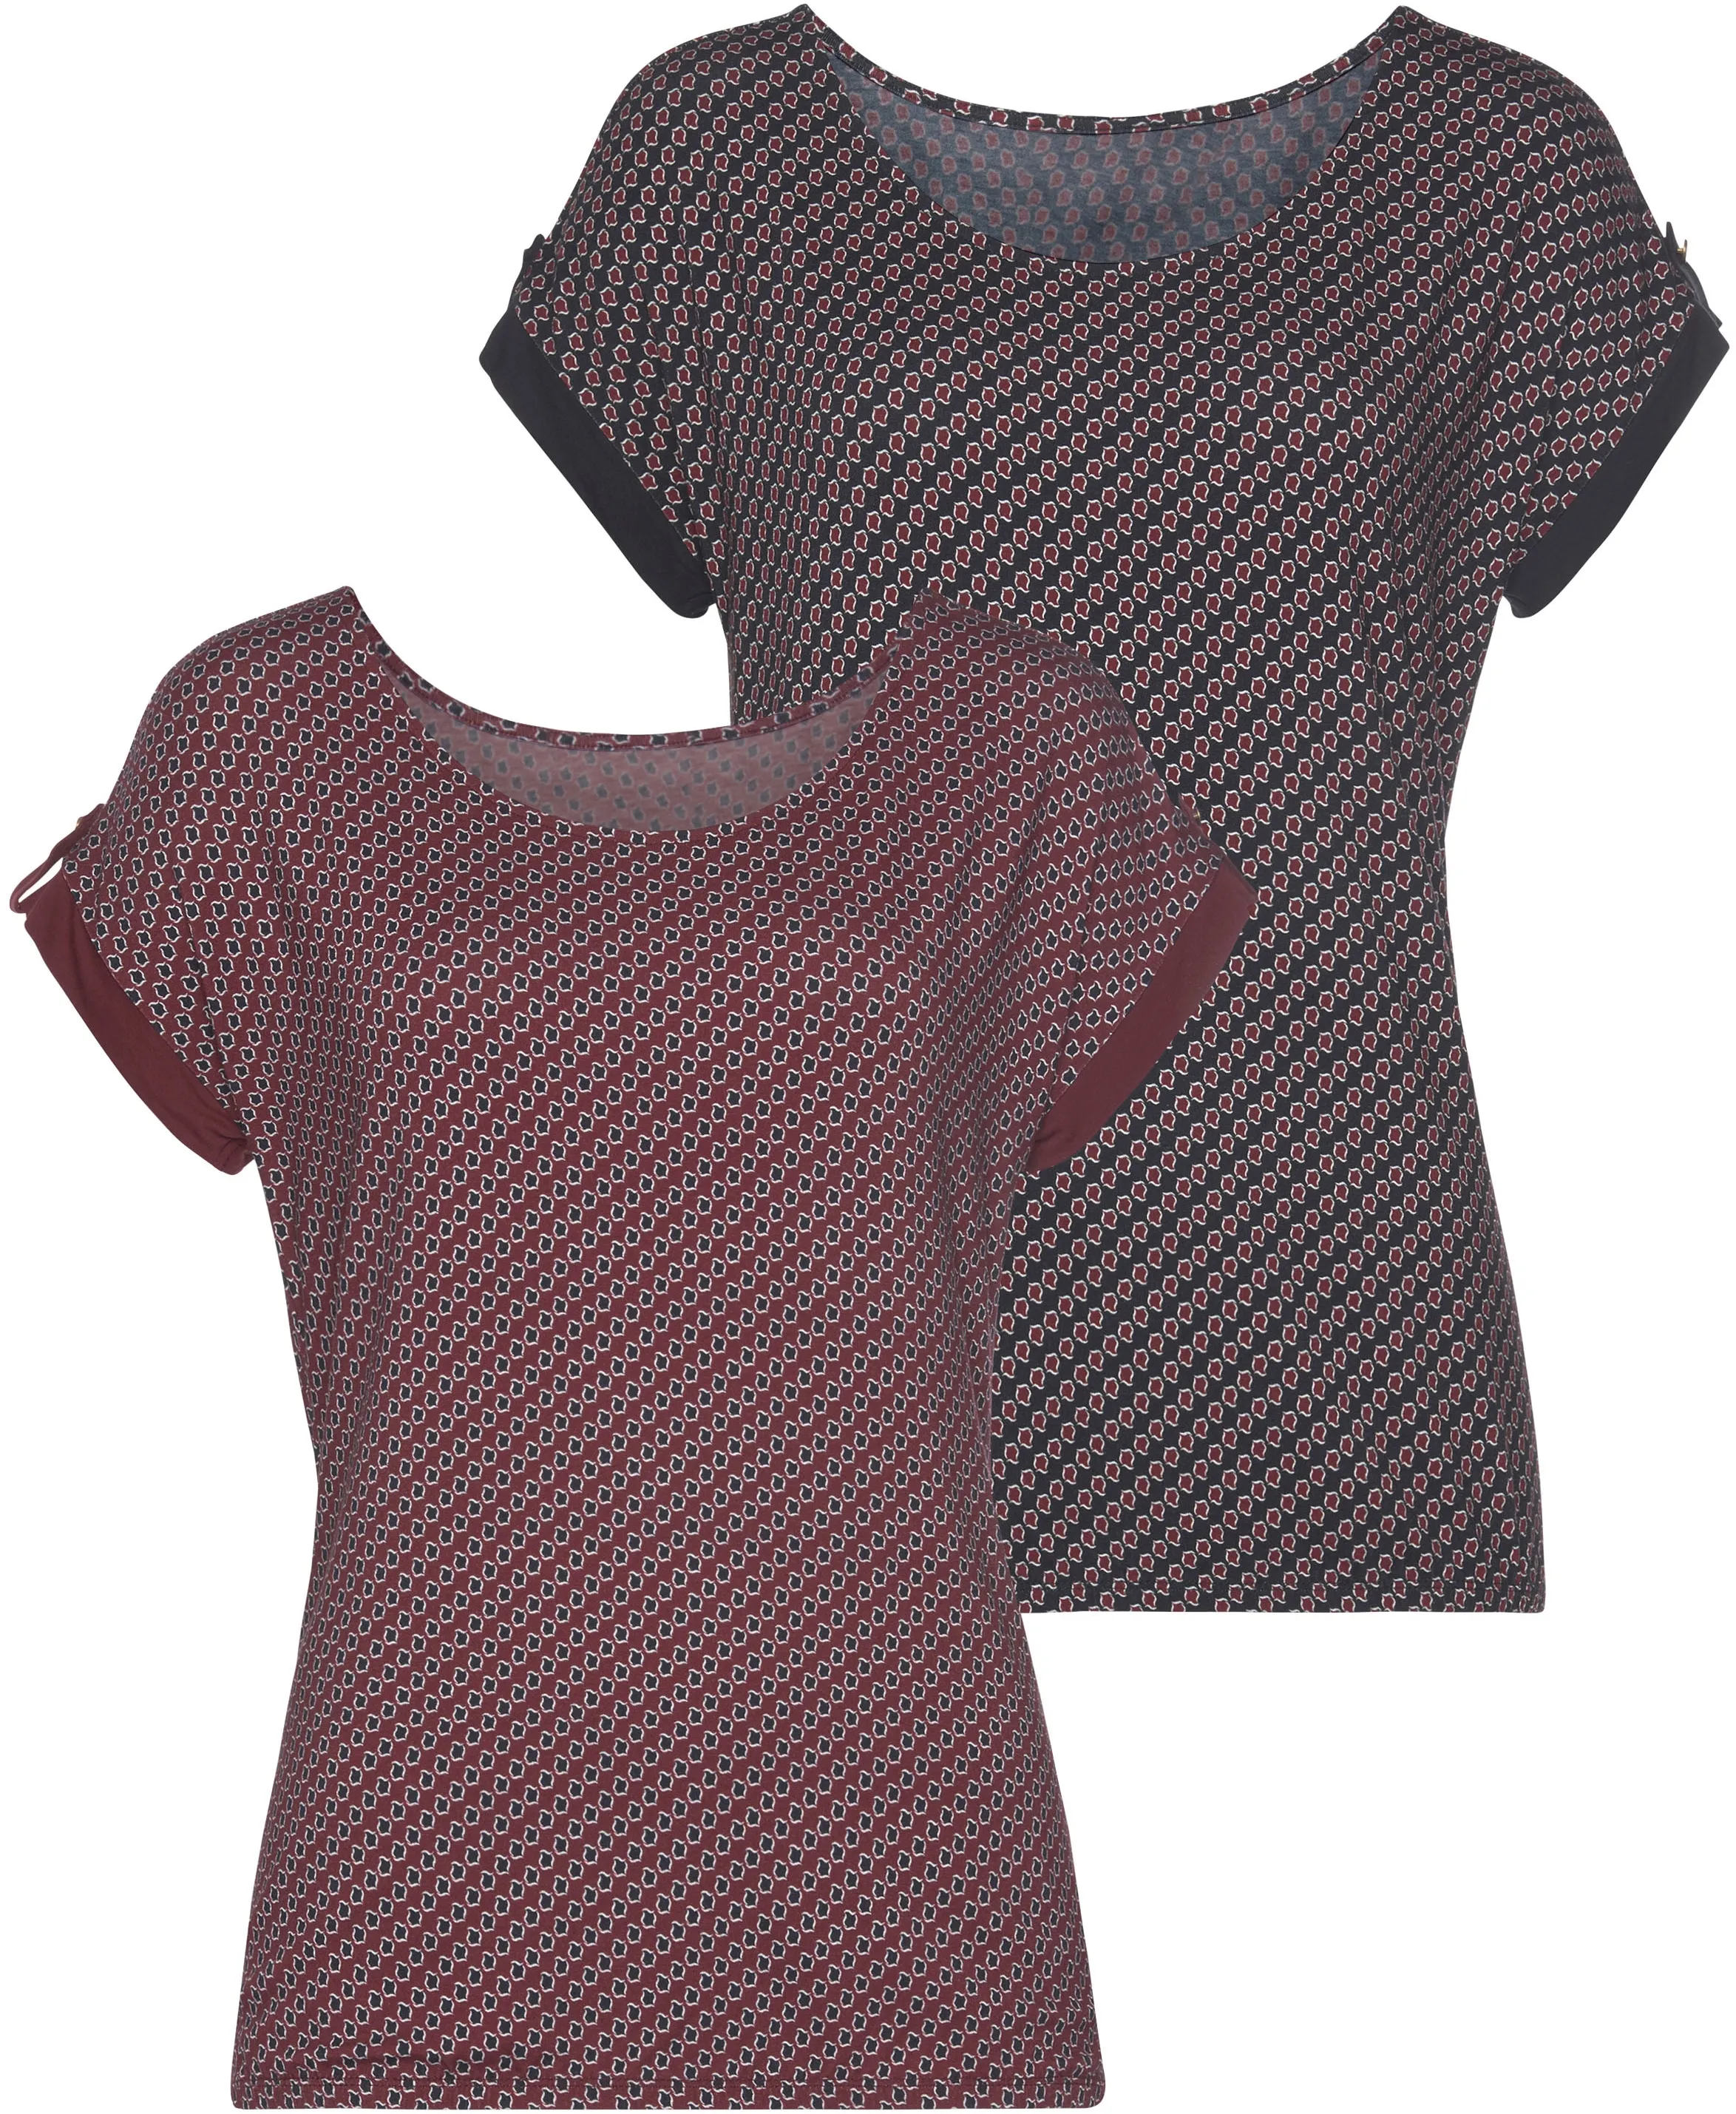 T-Shirt VIVANCE Gr. 36/38, farblos (beere, navy) Damen Shirts Jersey mit kleinem Beleg und goldfarbenen Knopf am Ärmelsaum